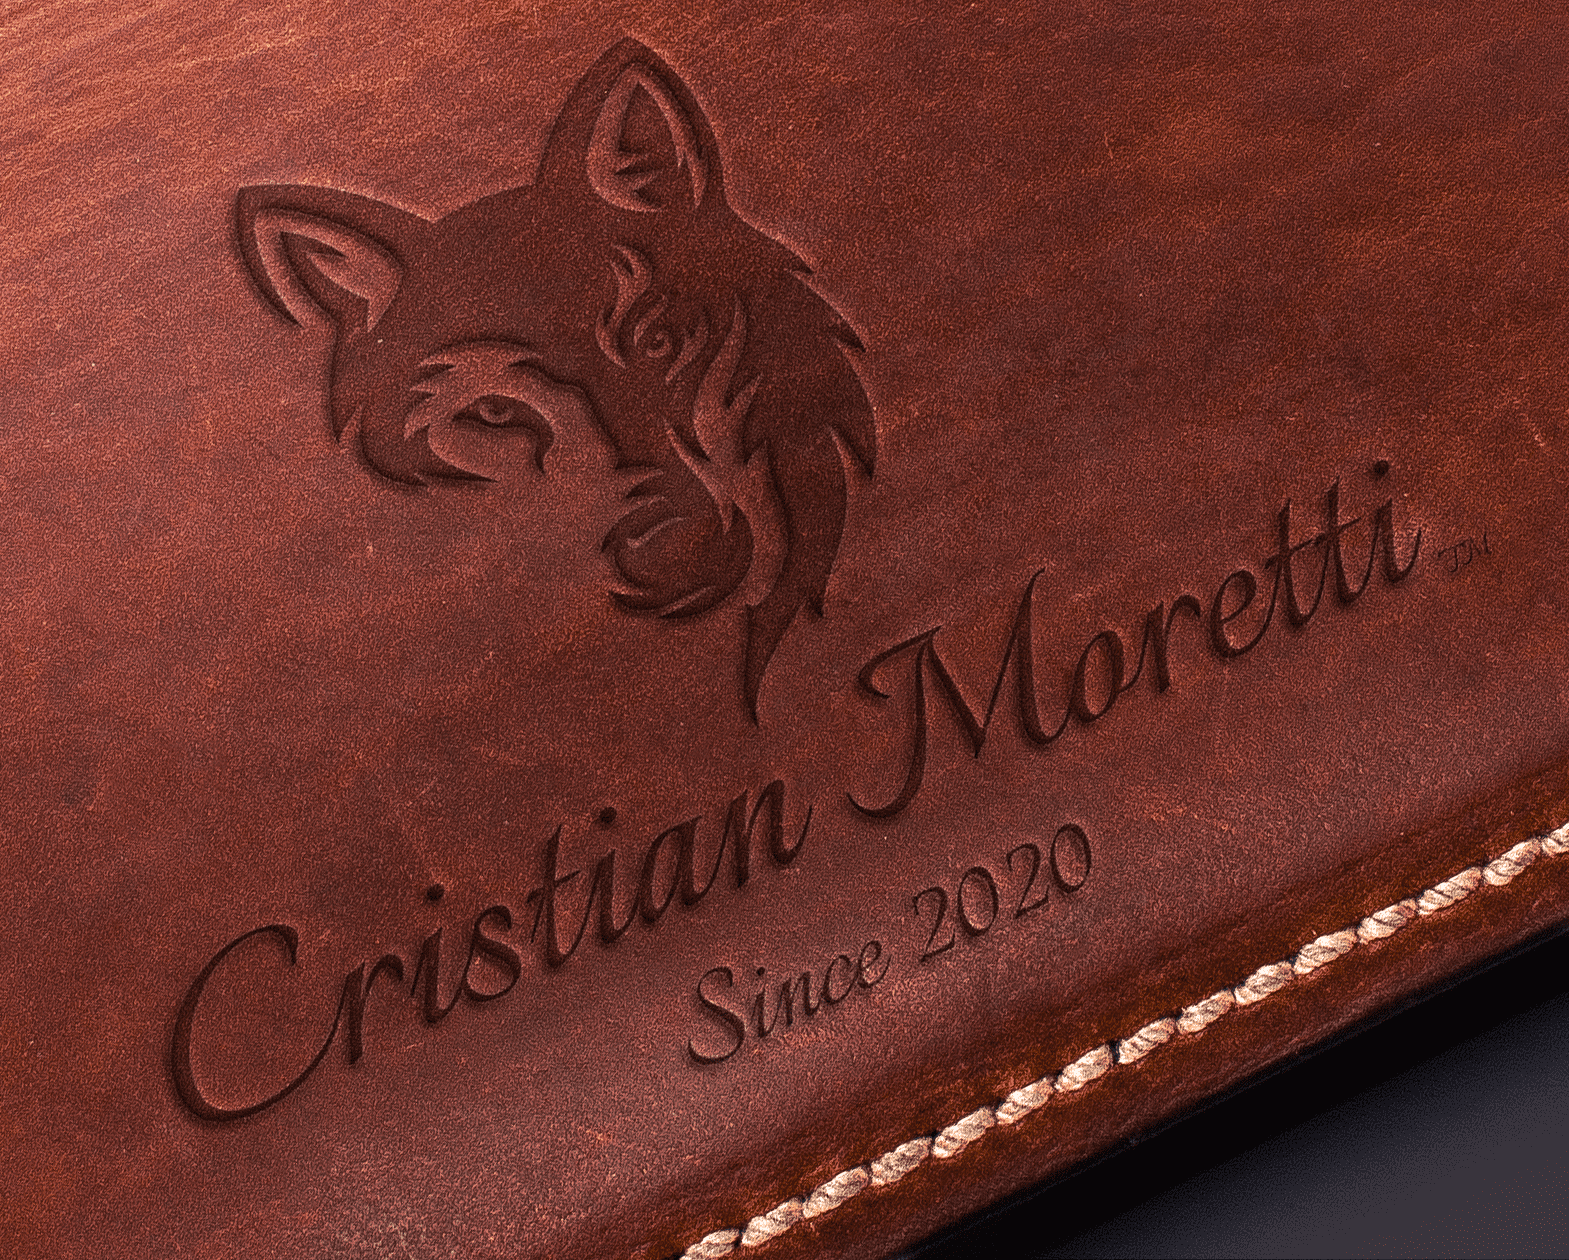 The Casanova - Leather Jacket by Cristian Moretti - Cristian Moretti